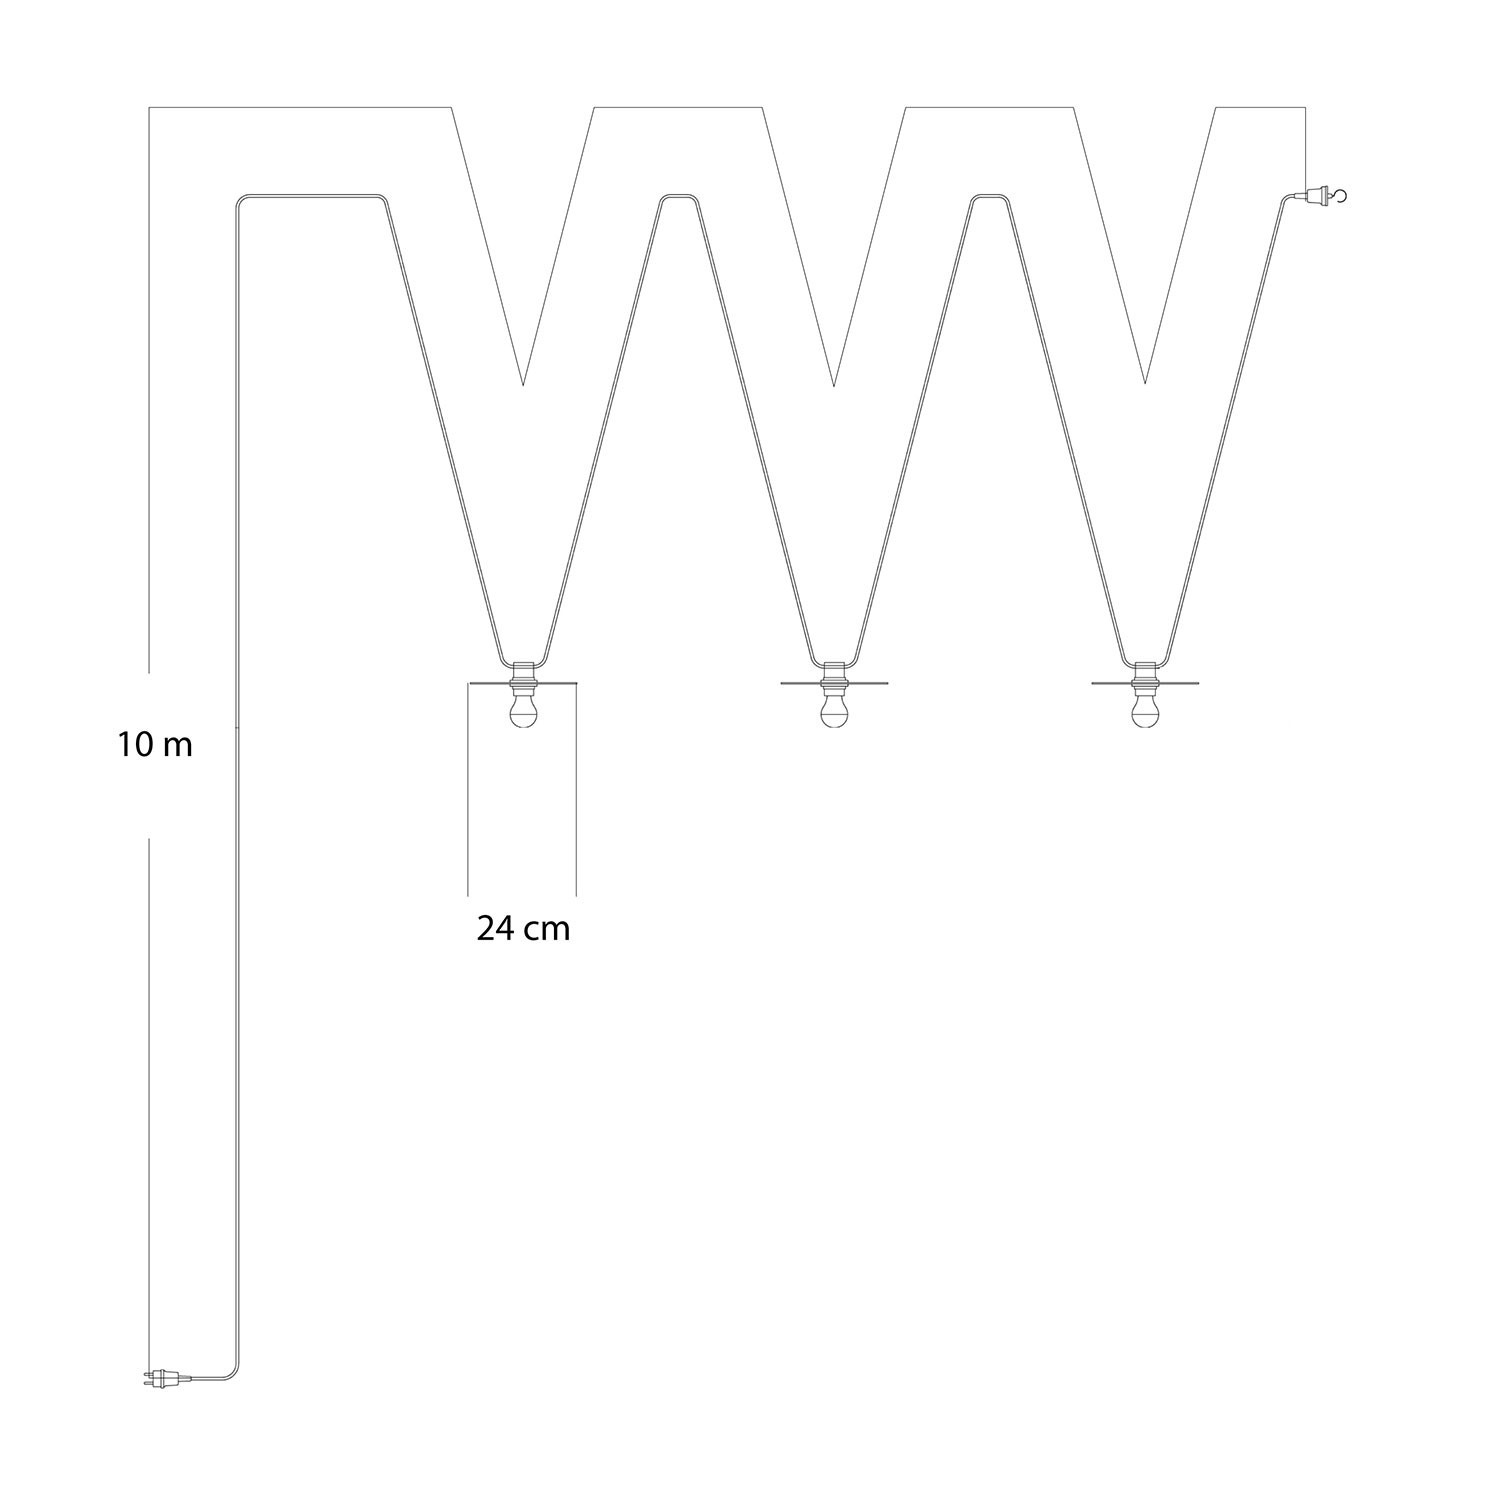 Lumet Maioliche - 10 meter lichtsnoer voor buiten met strijkijzersnoer, 3 fittingen en lampenkappen, haak en zwarte stekker